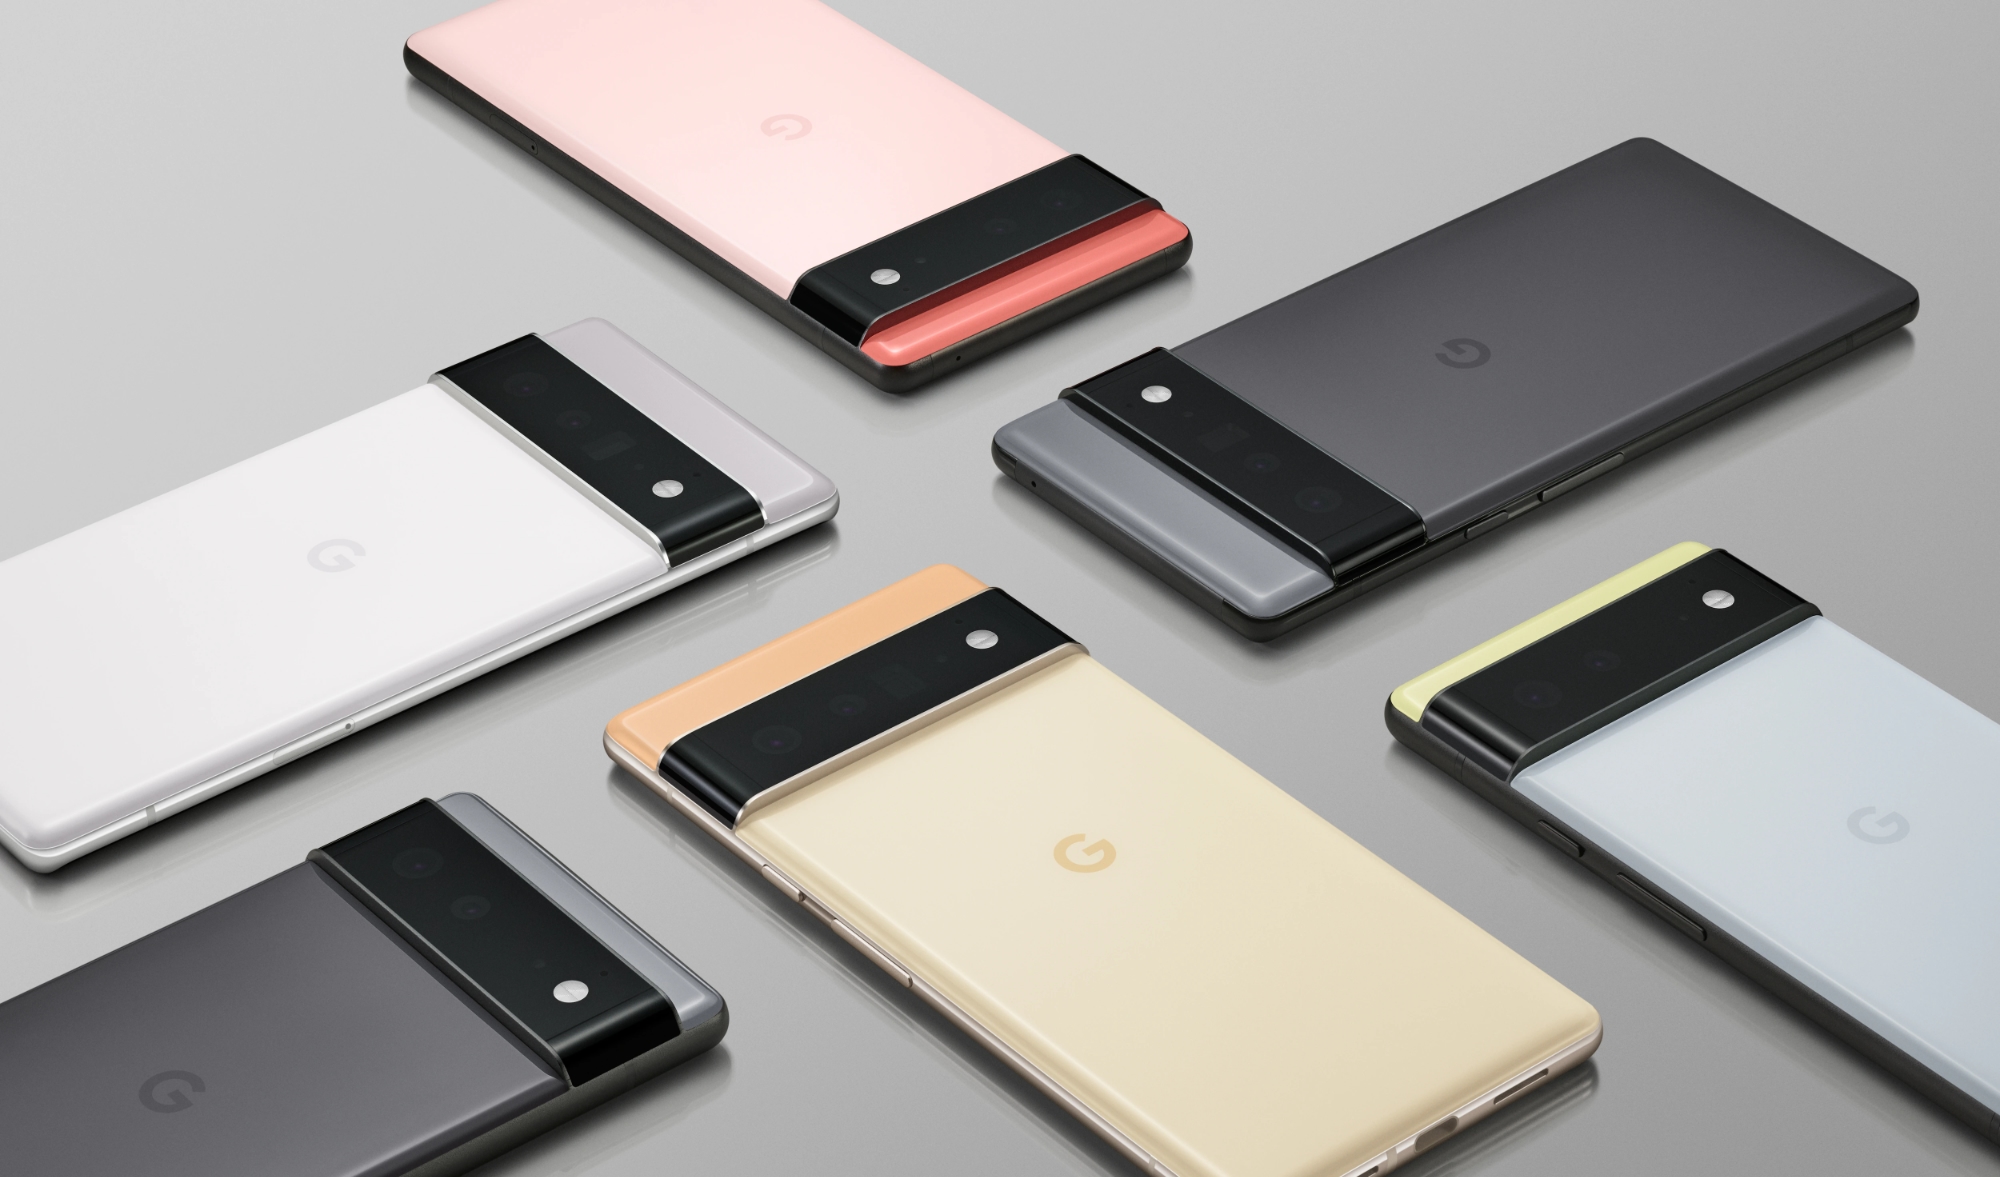 Джон Проссер розповів коли Google збирається представити смартфони Pixel 6 і Pixel 6 Pro